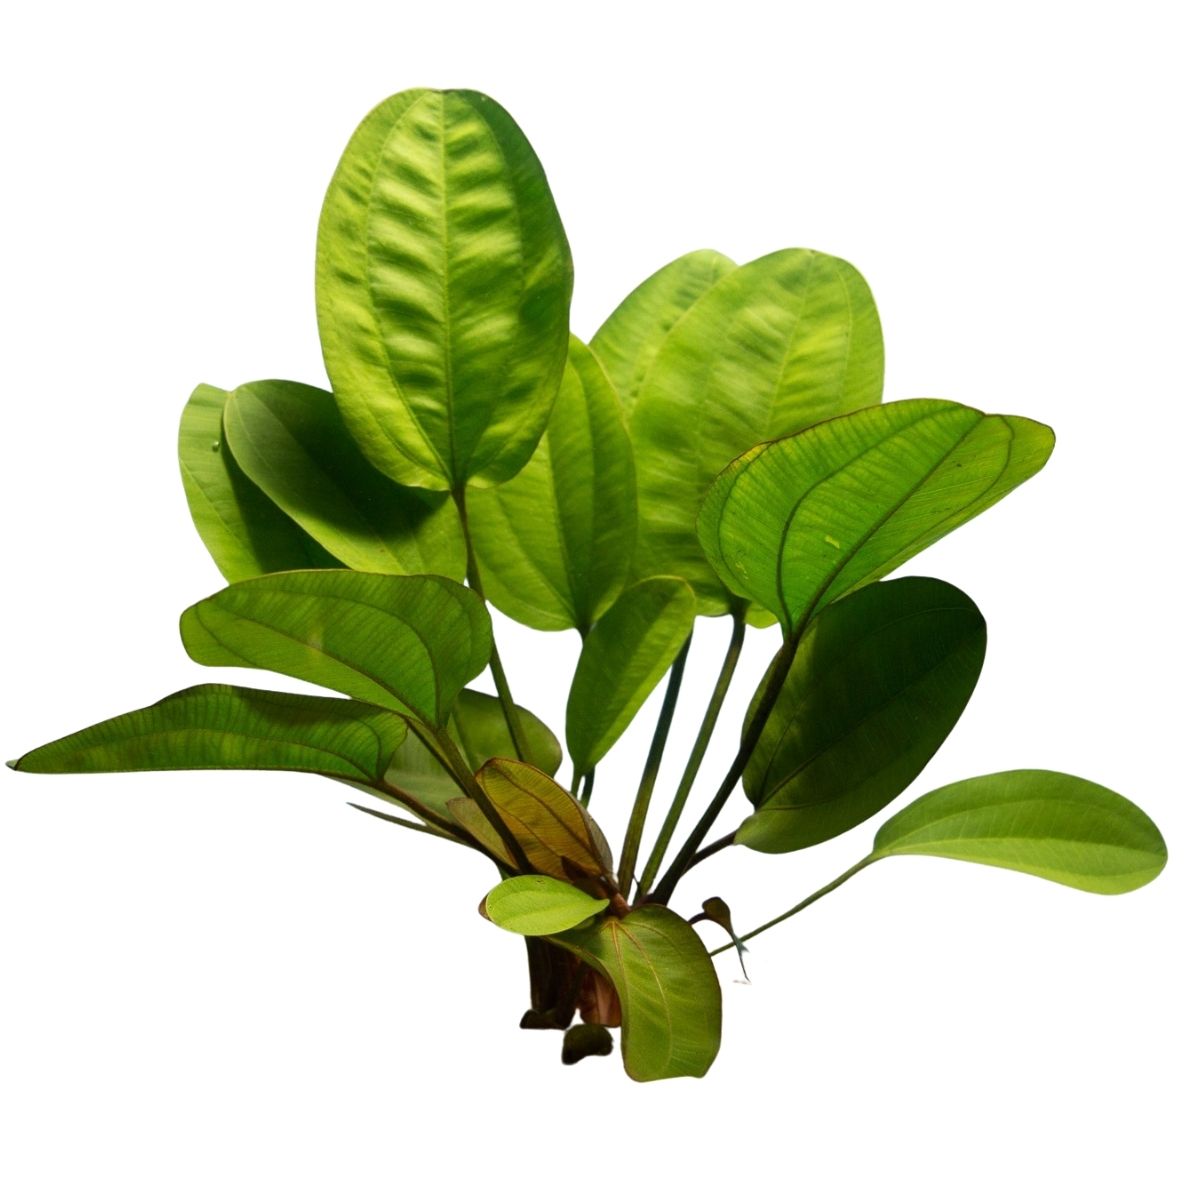 kleinerbar swordplant aquatic plant